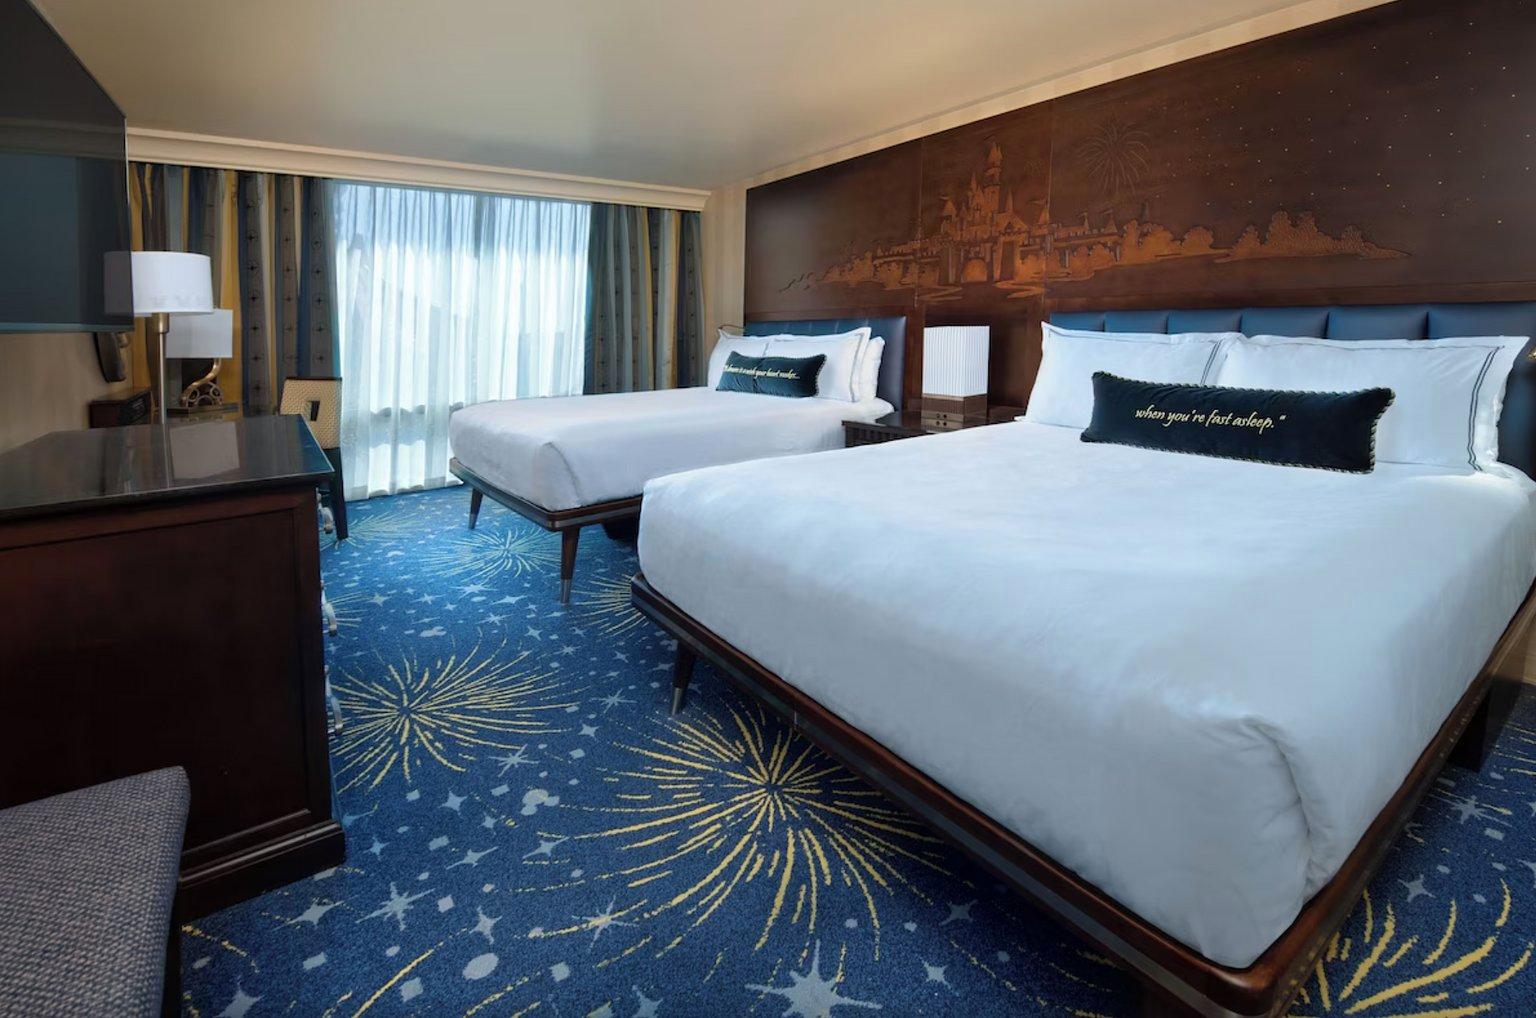 Deluxe View with 2 Queen Beds - Disneyland Hotel